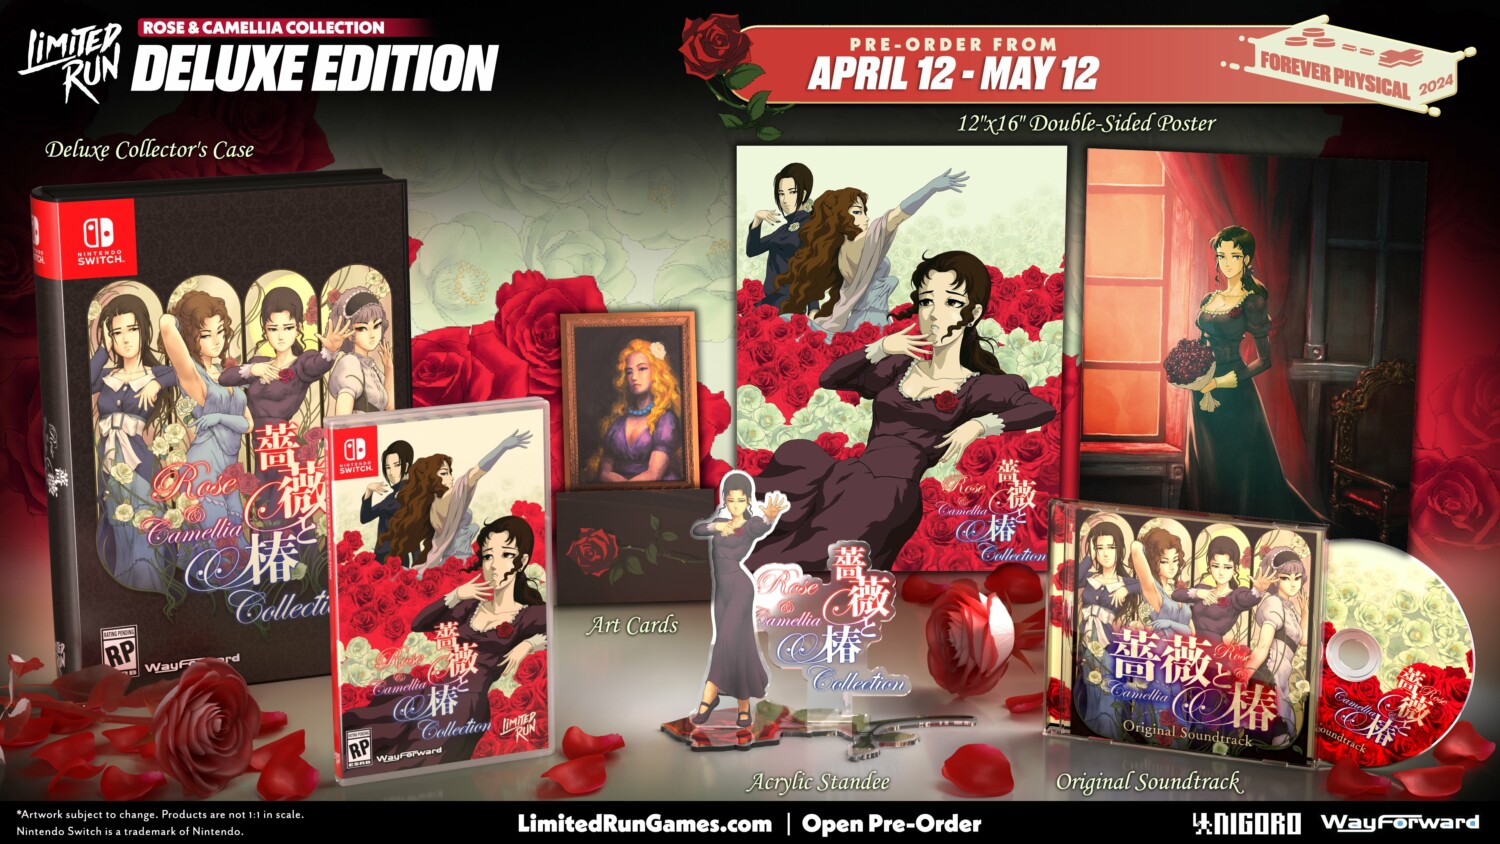 Rose & Camellia Collection llegará a Nintendo Switch el 16 de abril 41